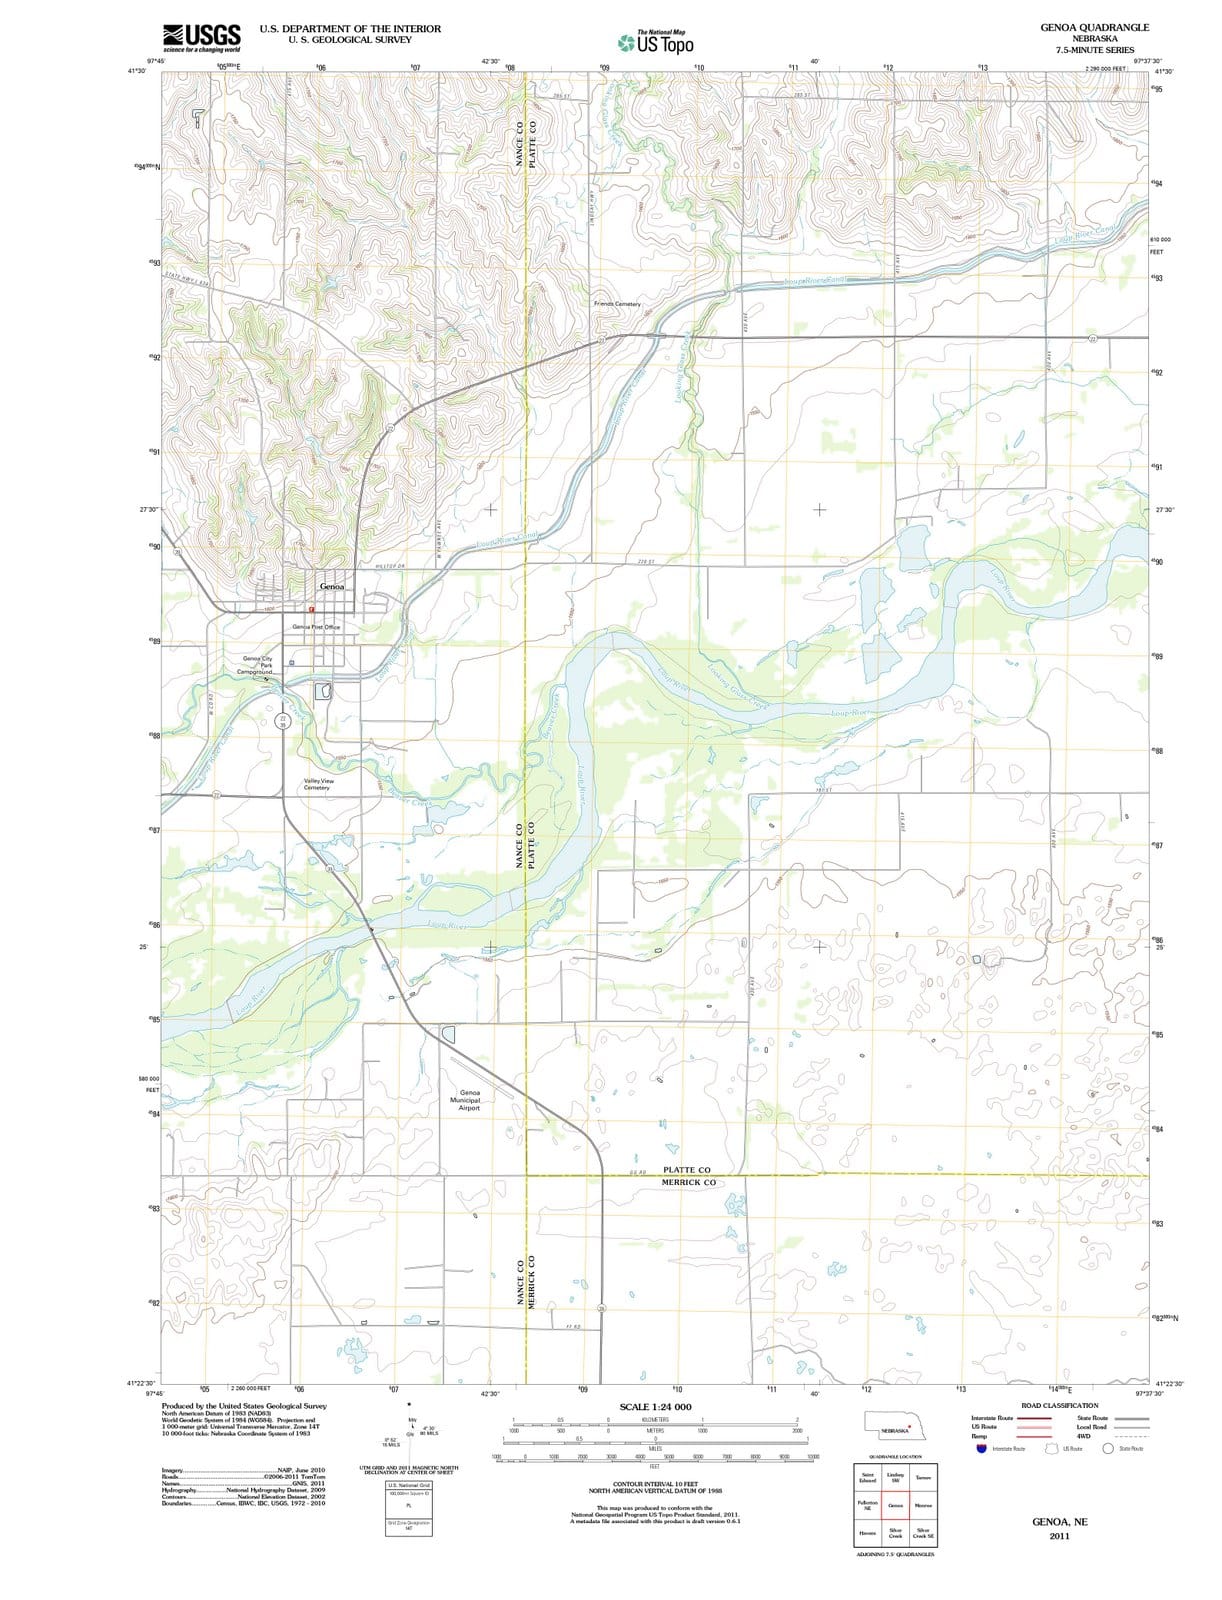 2011 Genoa, NE - Nebraska - USGS Topographic Map